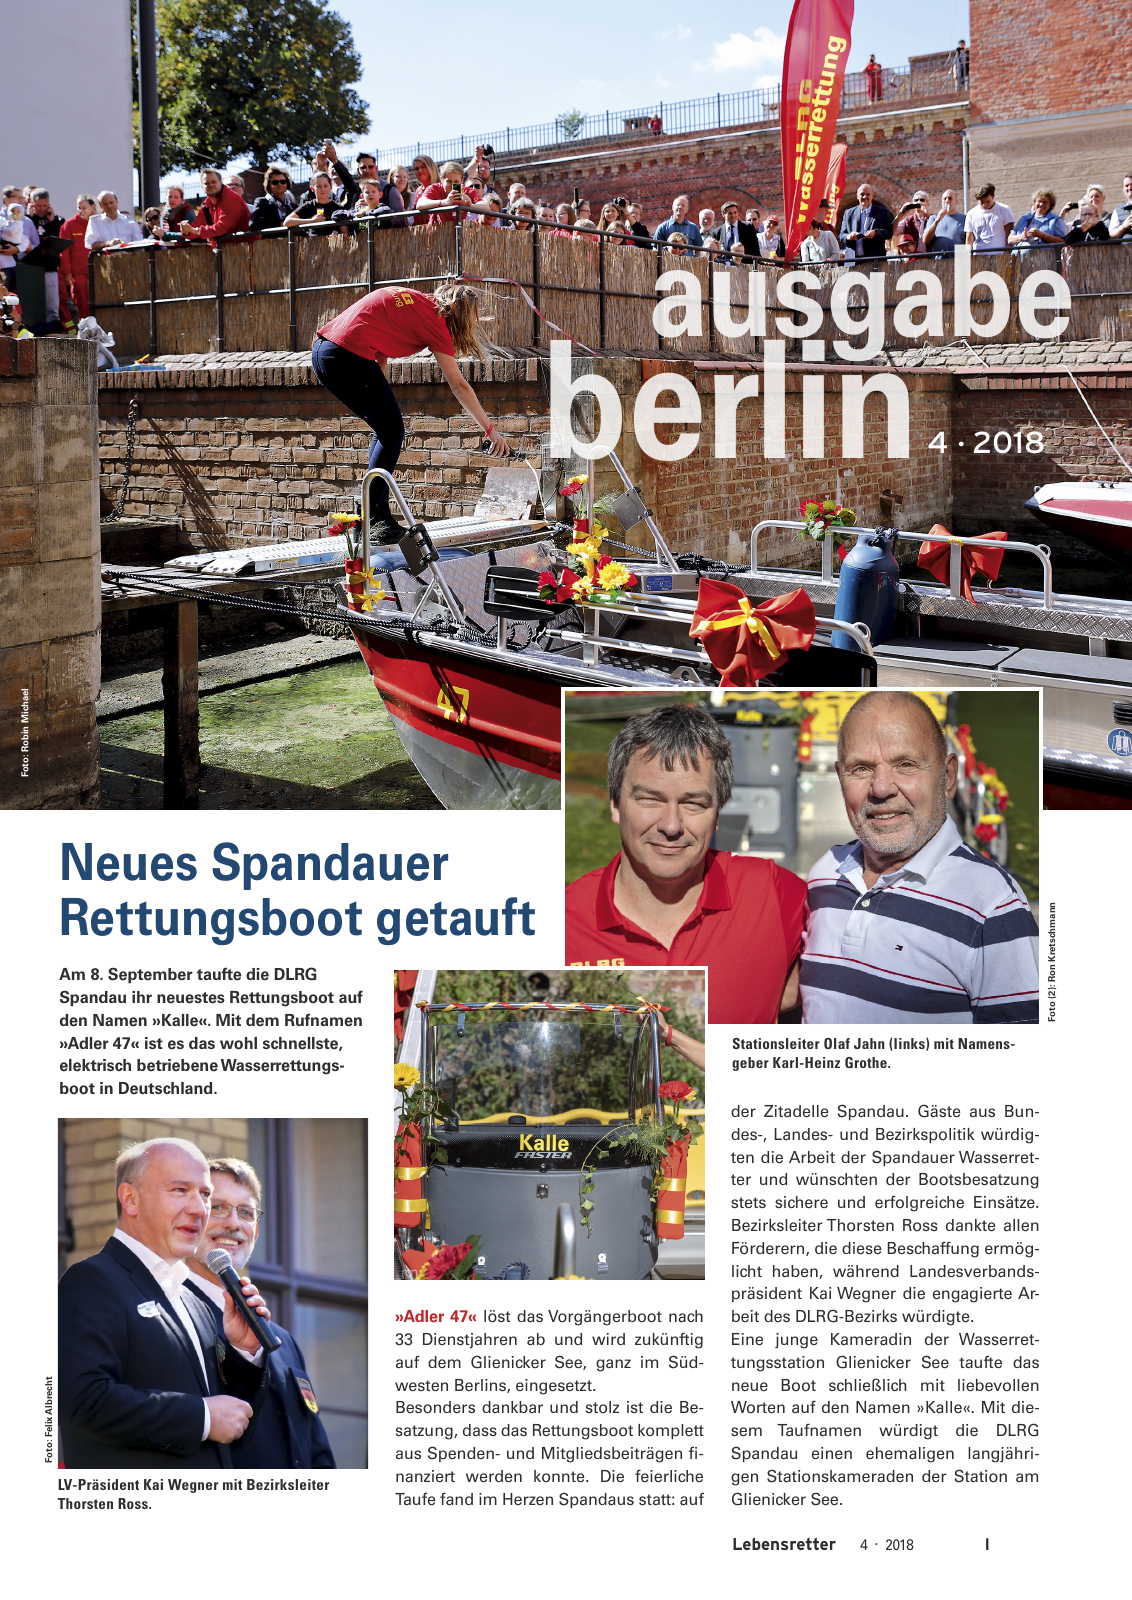 Vorschau Lebensretter 4/2018 - Regionalausgabe Berlin Seite 3